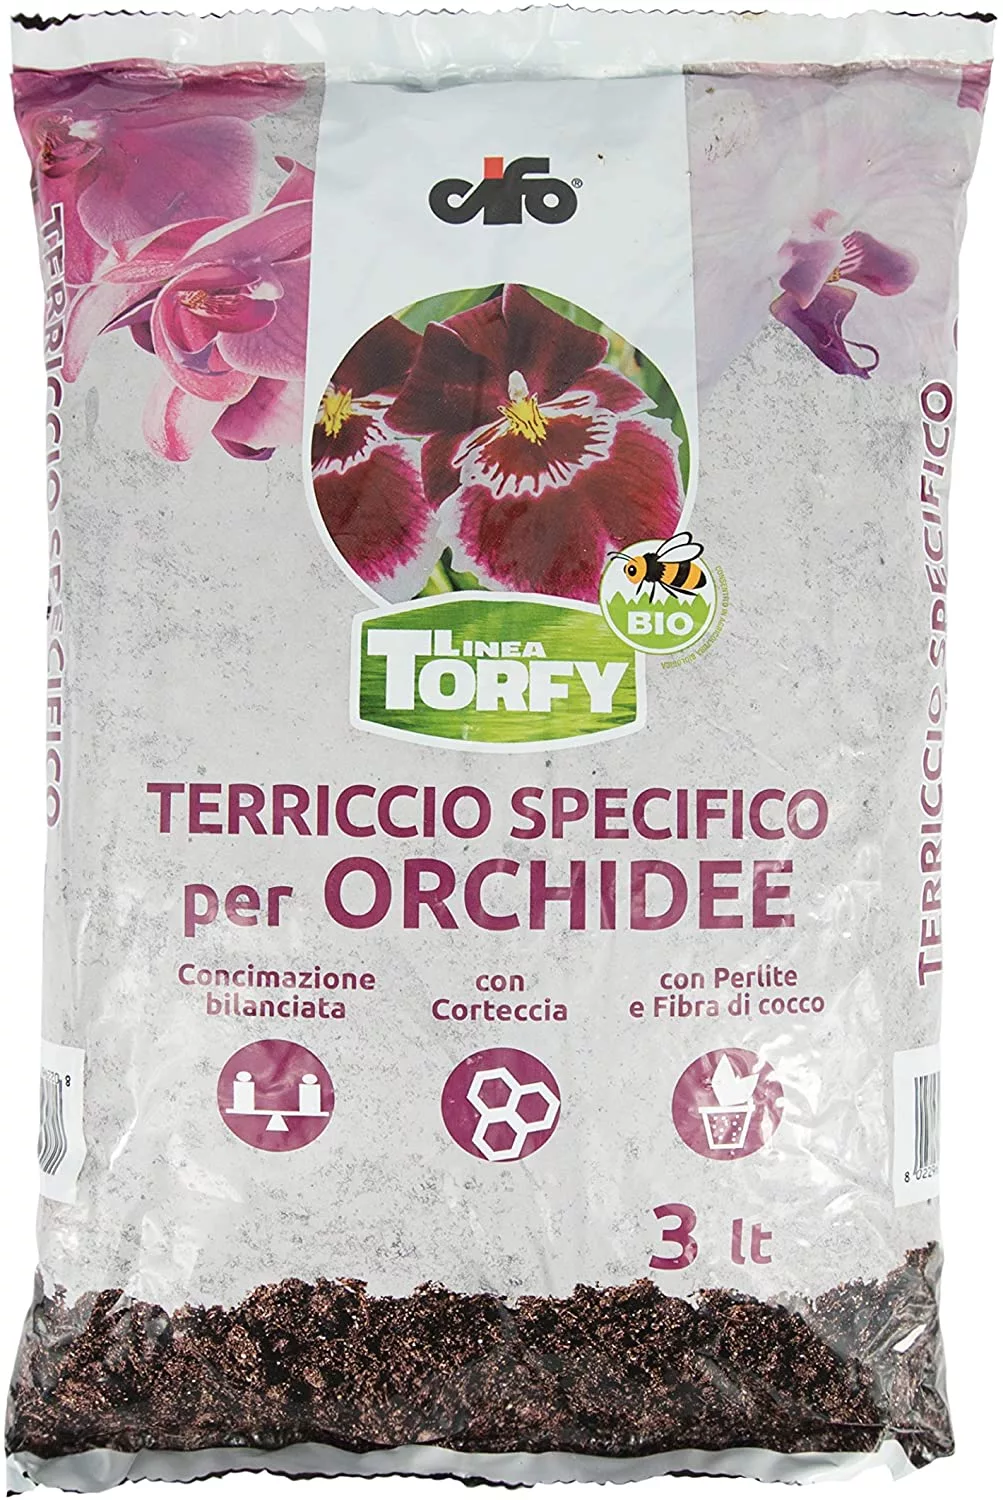 CIFO Linea Torfy, Terriccio specifico per Orchidee 3lt